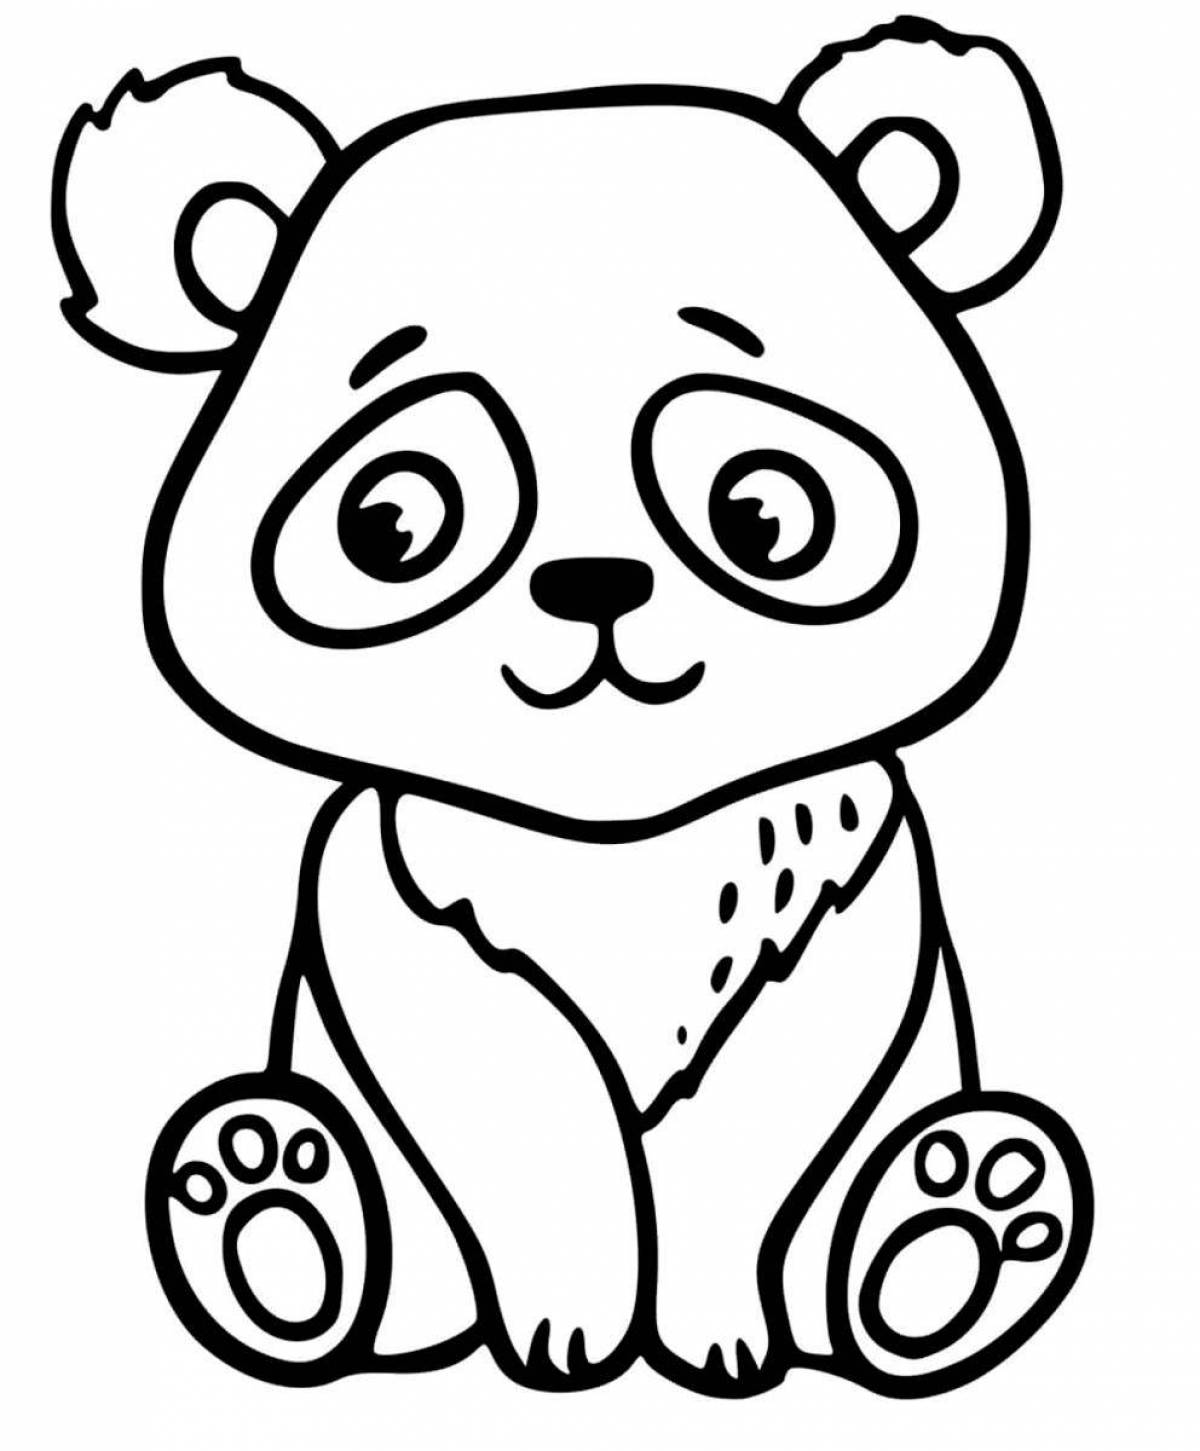 Wonderful panda coloring book for kids